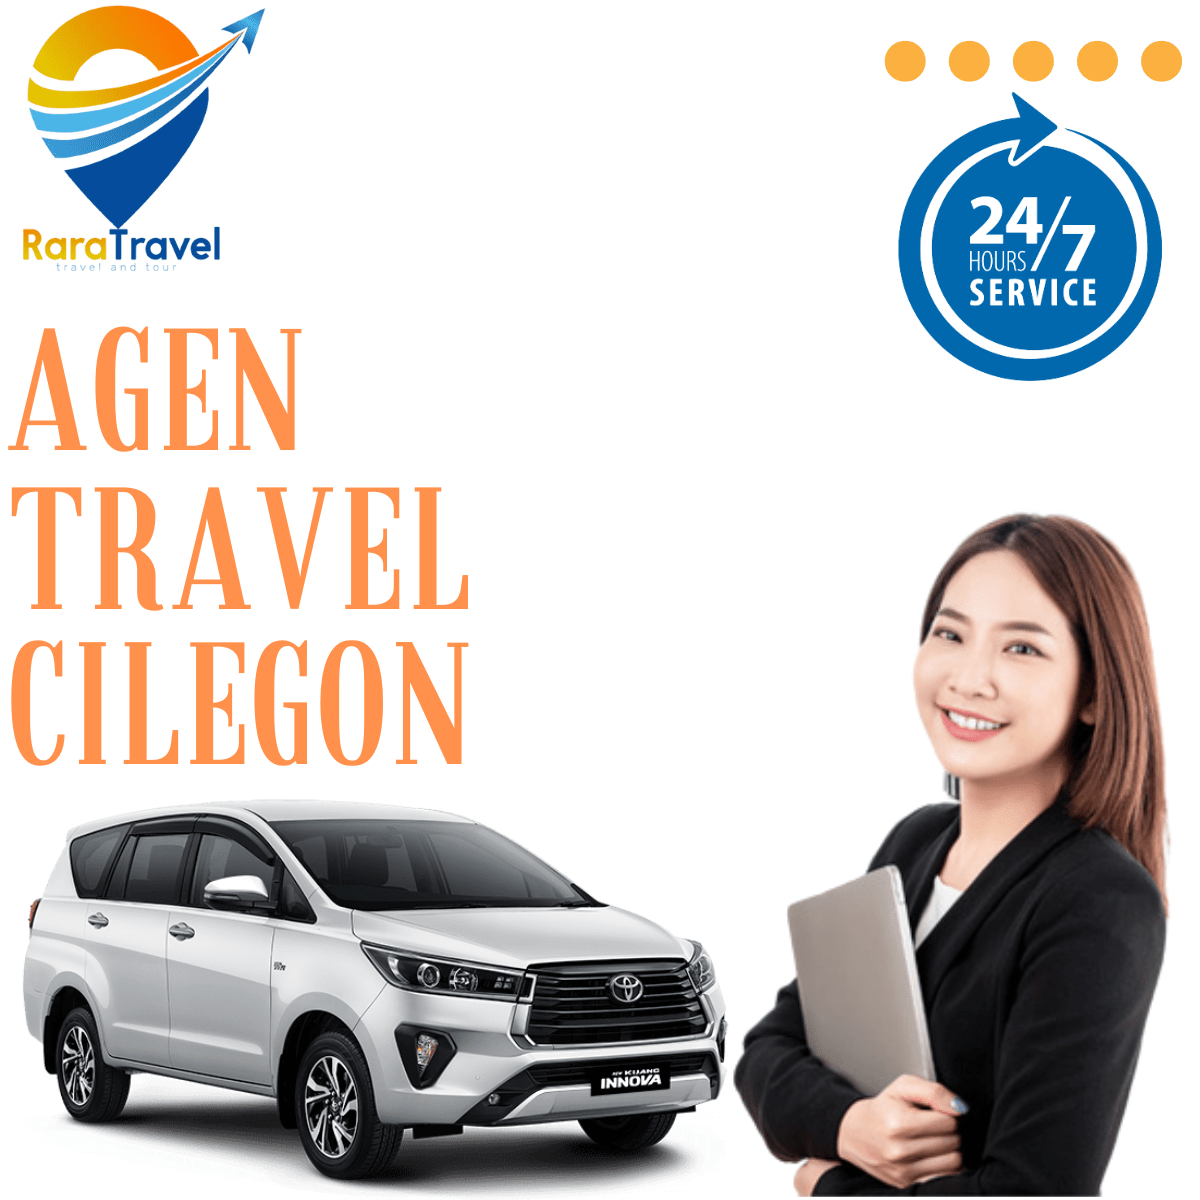 Agen Travel Cilegon Hiace: Harga Tiket, Jadwal, Rute dan Fasilitas